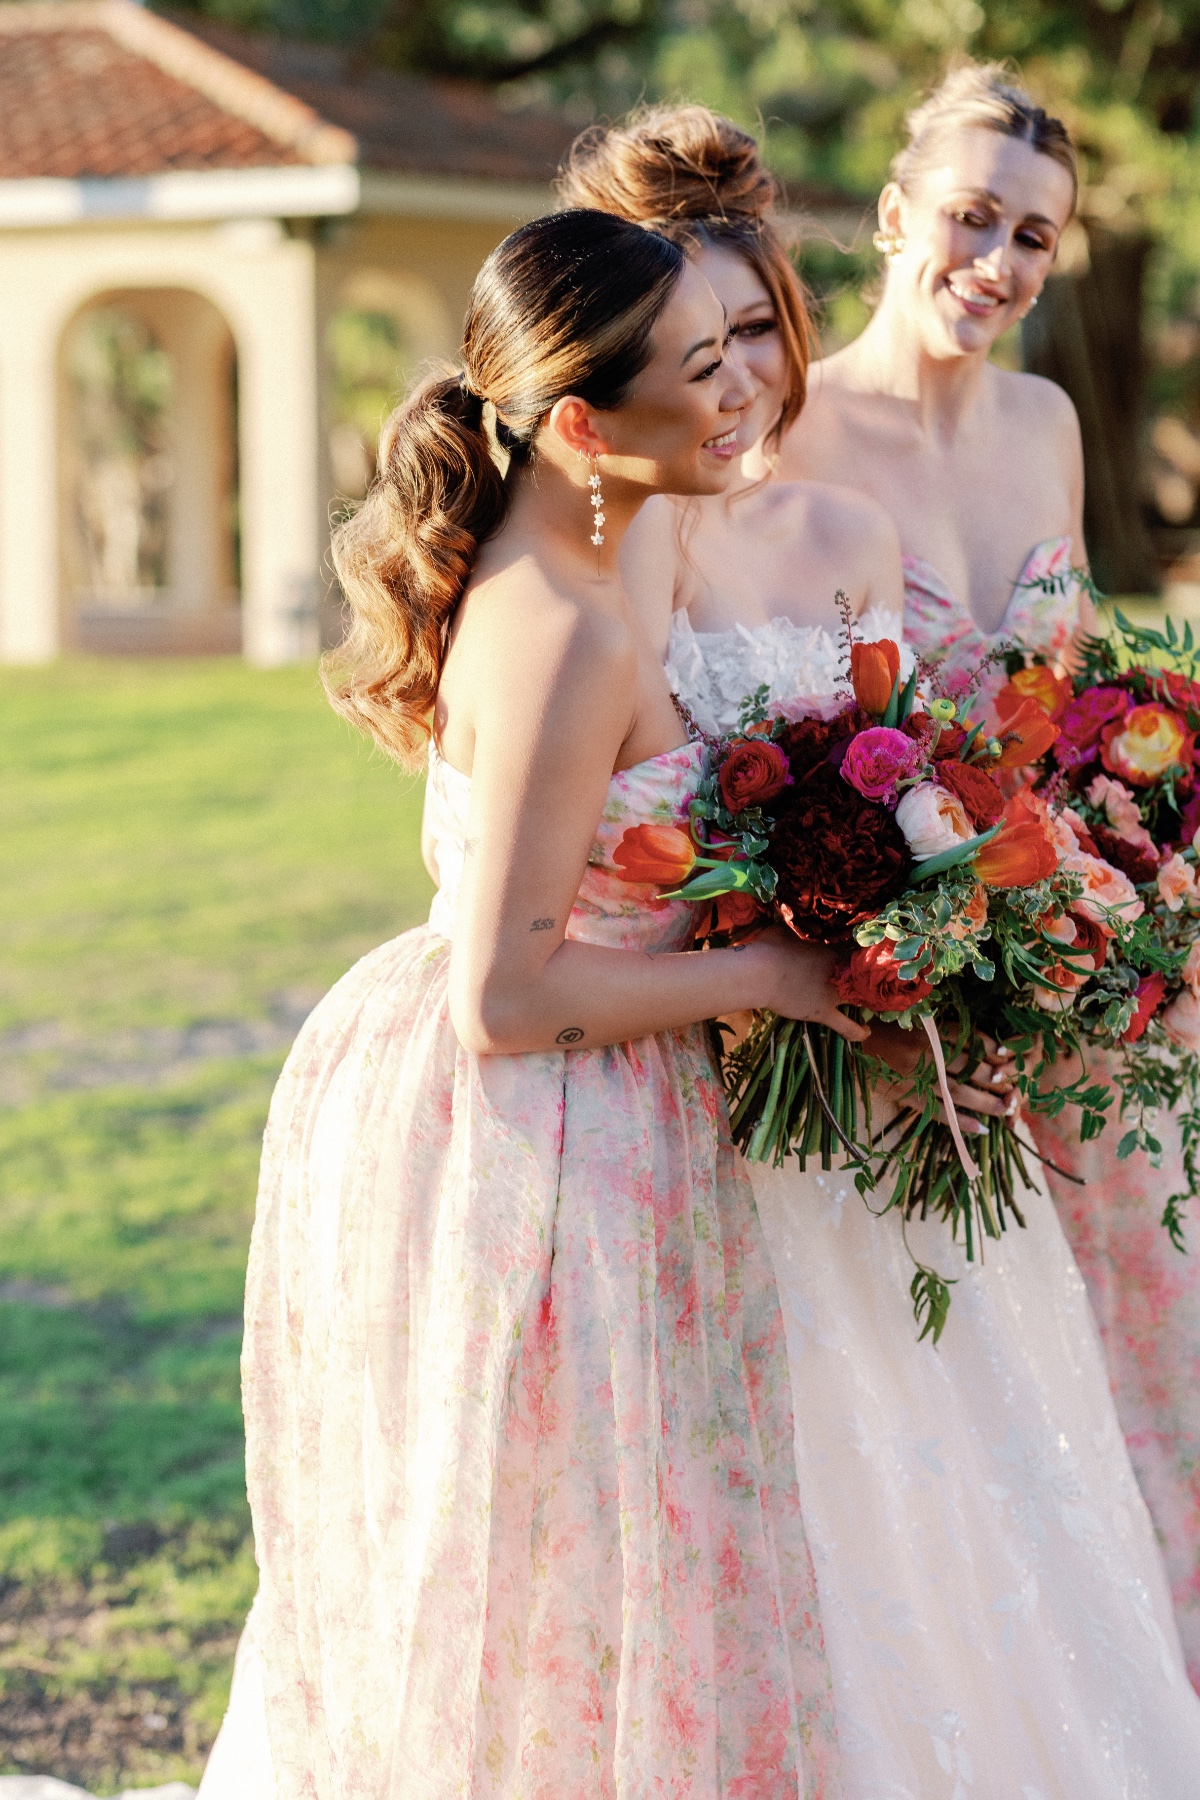 Floral patterned bridesmaid dresses by Monique Lhuillier